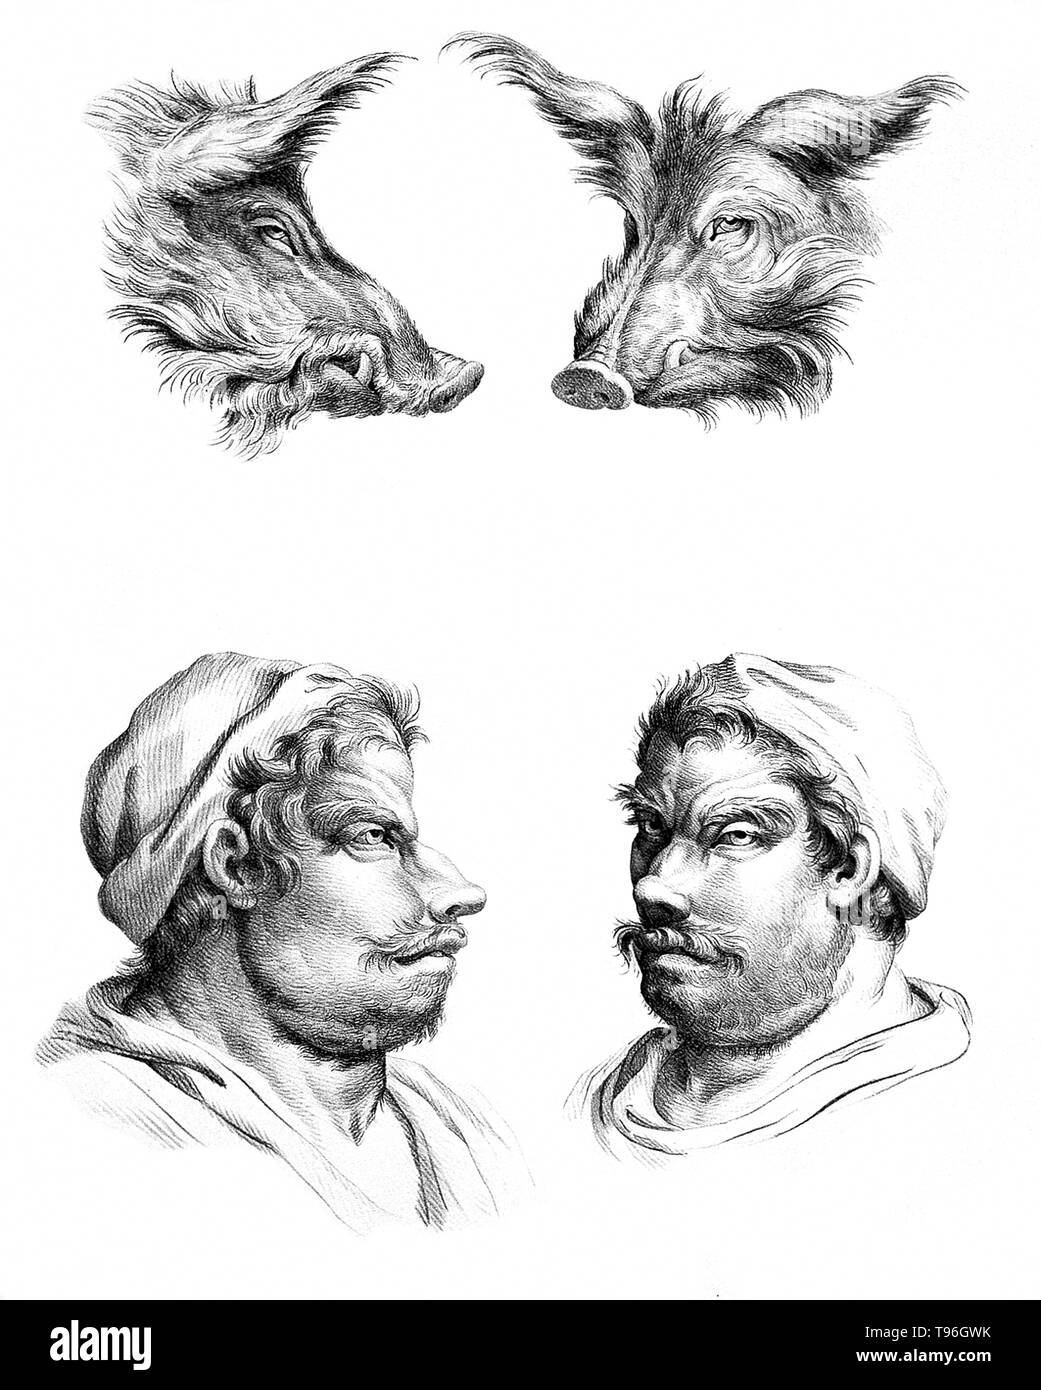 Das Ziel der Physiognomie Charakter ist nach Funktionen des Gesichts zu beurteilen. Charles Le Brun (Februar 24, 1619 - Februar 12, 1690) war ein französischer Maler, Kunsttheoretiker, Raumausstatter und Maler Louis XIV. Stockfoto